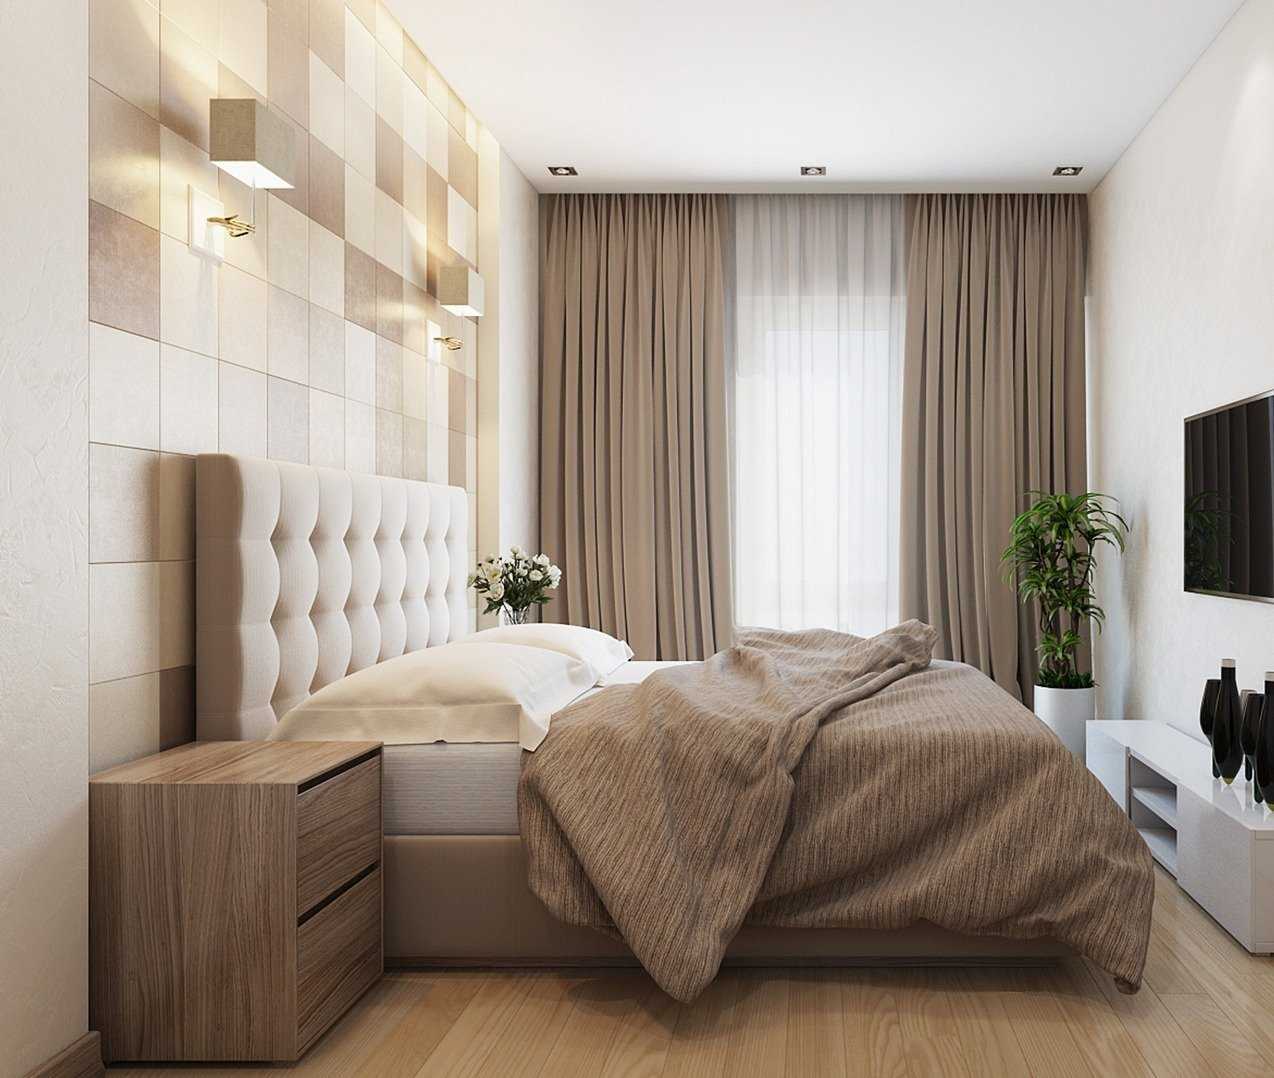 Квадратная спальня - 100 фото лучших идей дизайна, планировки и зонирования спальни